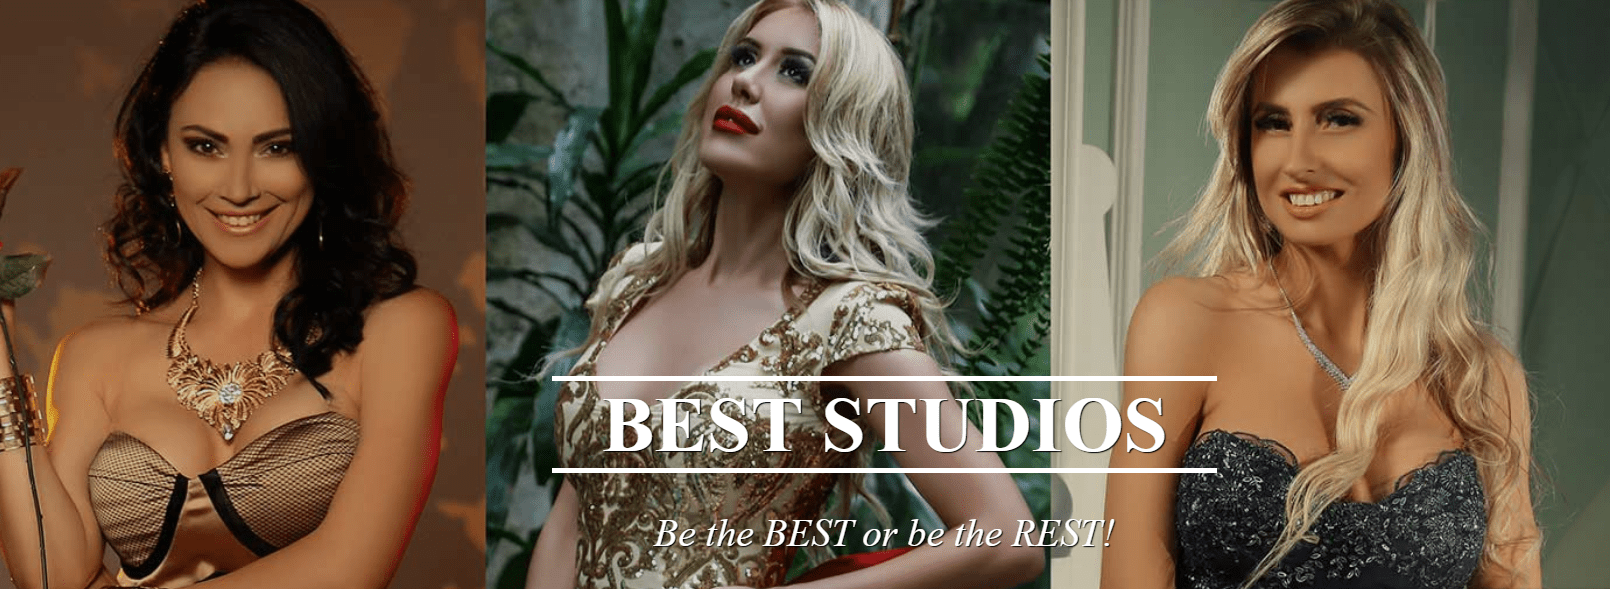 Best Studios Bucuresti Studio Videochat